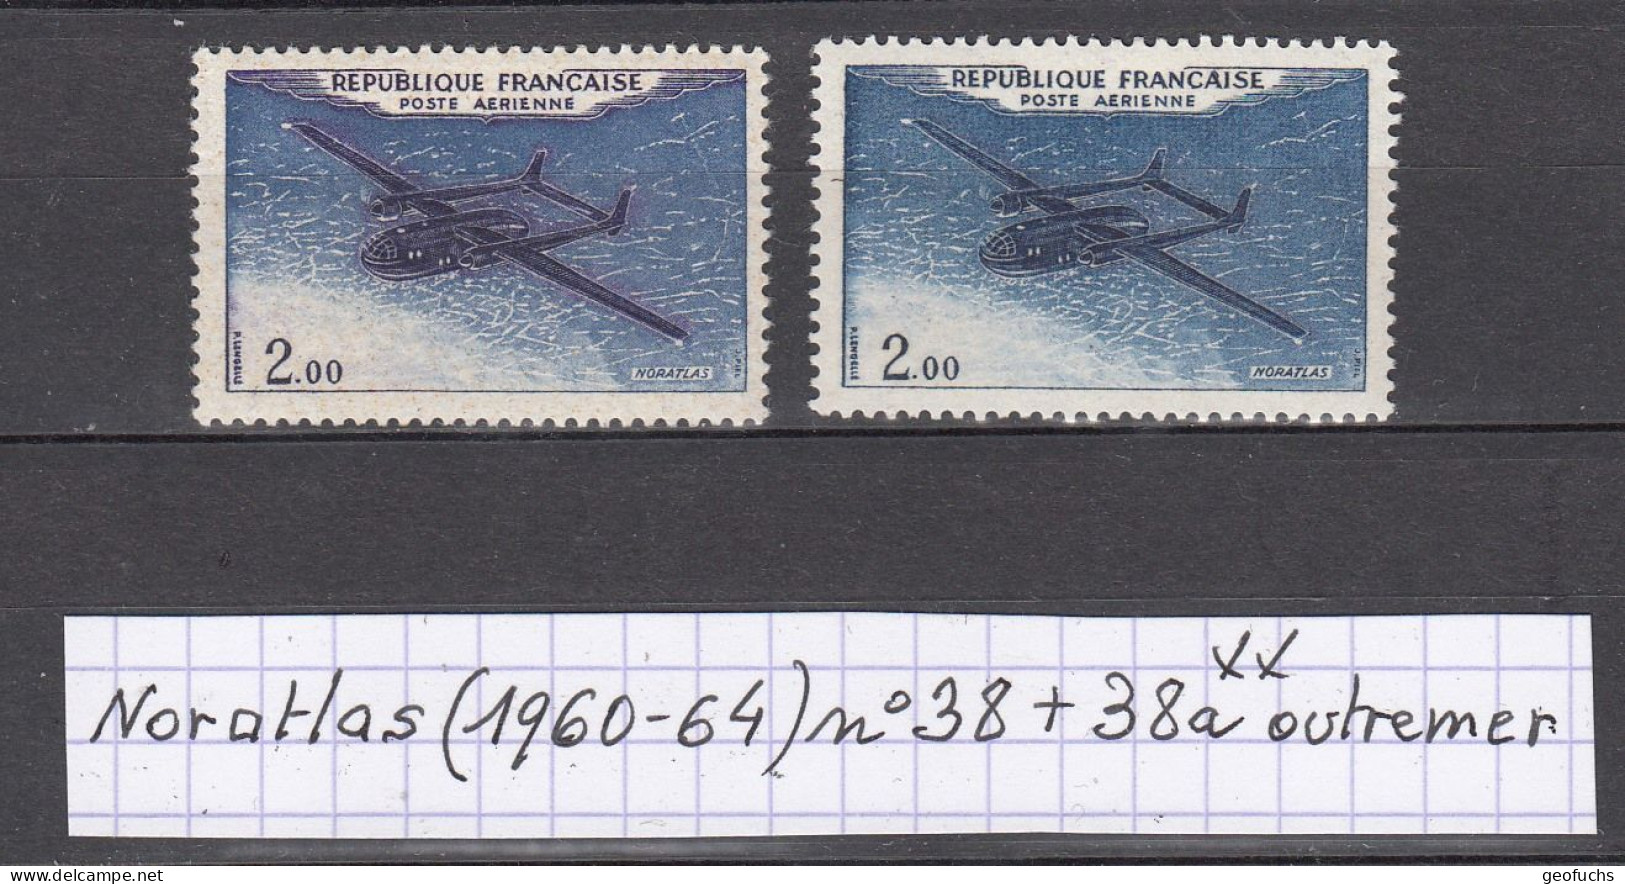 France Prototypes Noratlas (1960-64) Poste Aérienne Y/T Variété N° 38 + 38a (outremer) Neufs ** - Unused Stamps